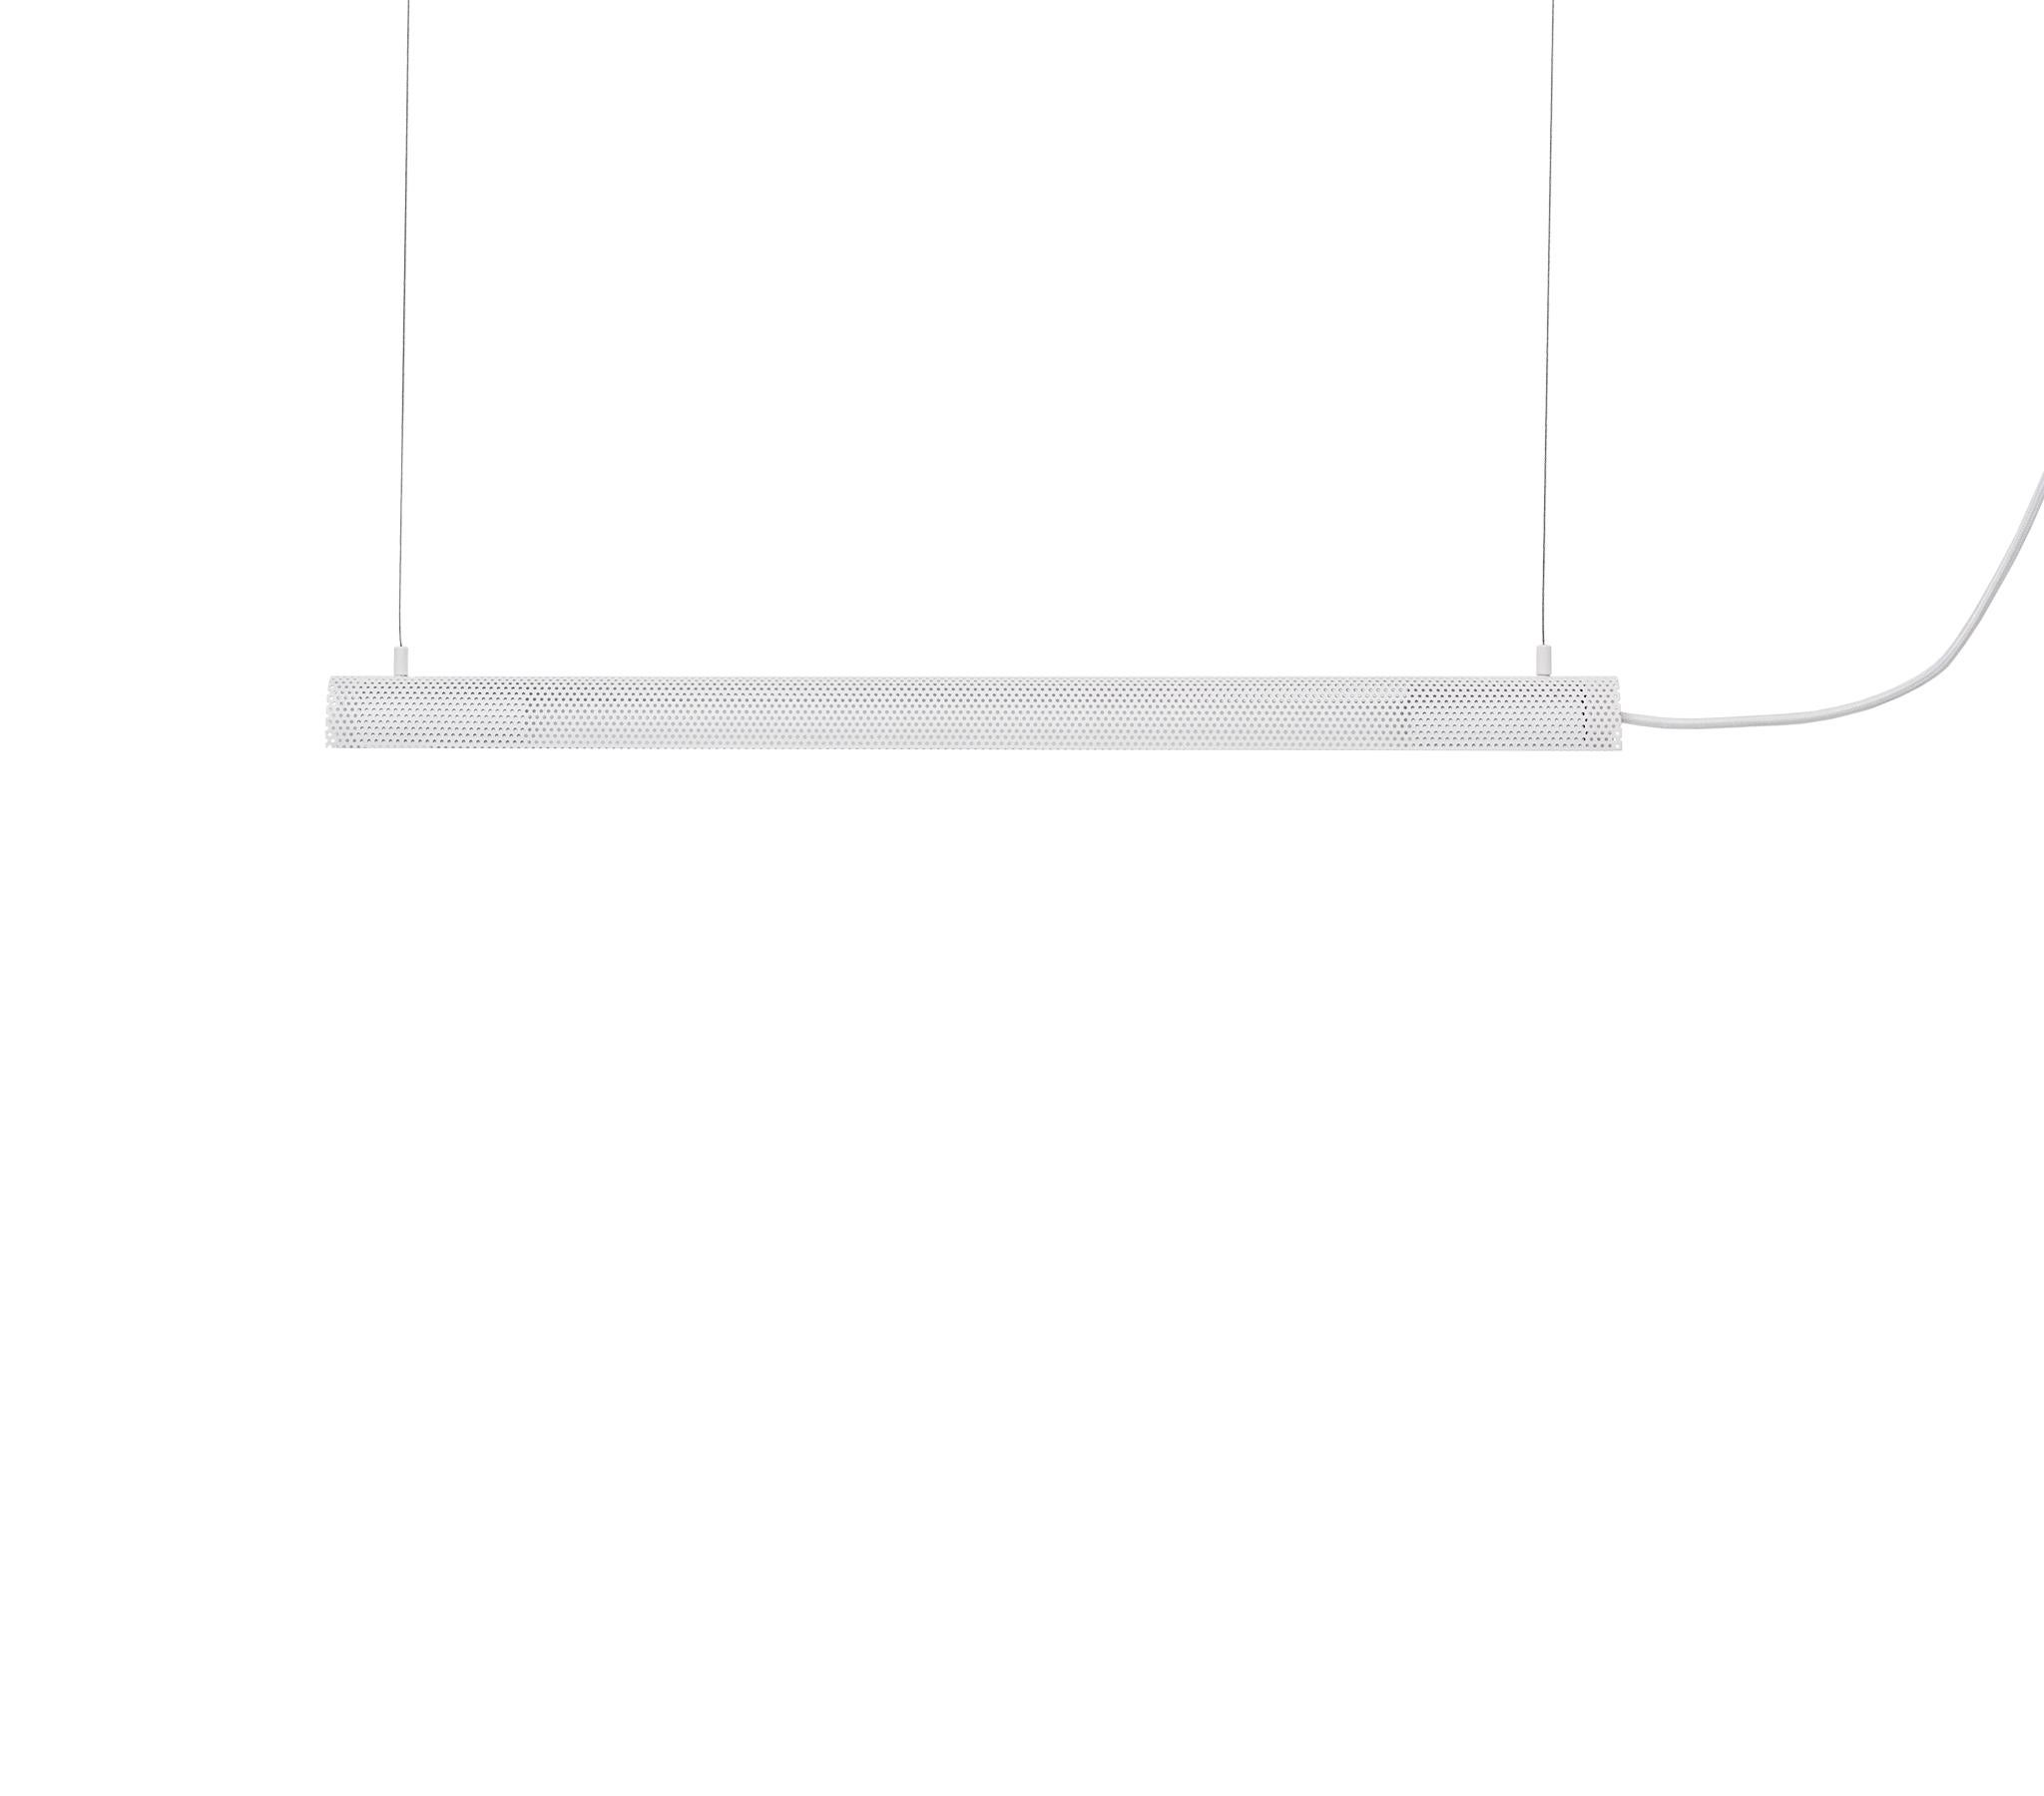 Basée sur un tube LED standard, la lampe suspendue Radent offre à la fois un éclairage direct vers le bas et un éclairage subtil vers le haut. La maille métallique perforée permet un éclairage doux. La lampe suspendue Radent est disponible en deux